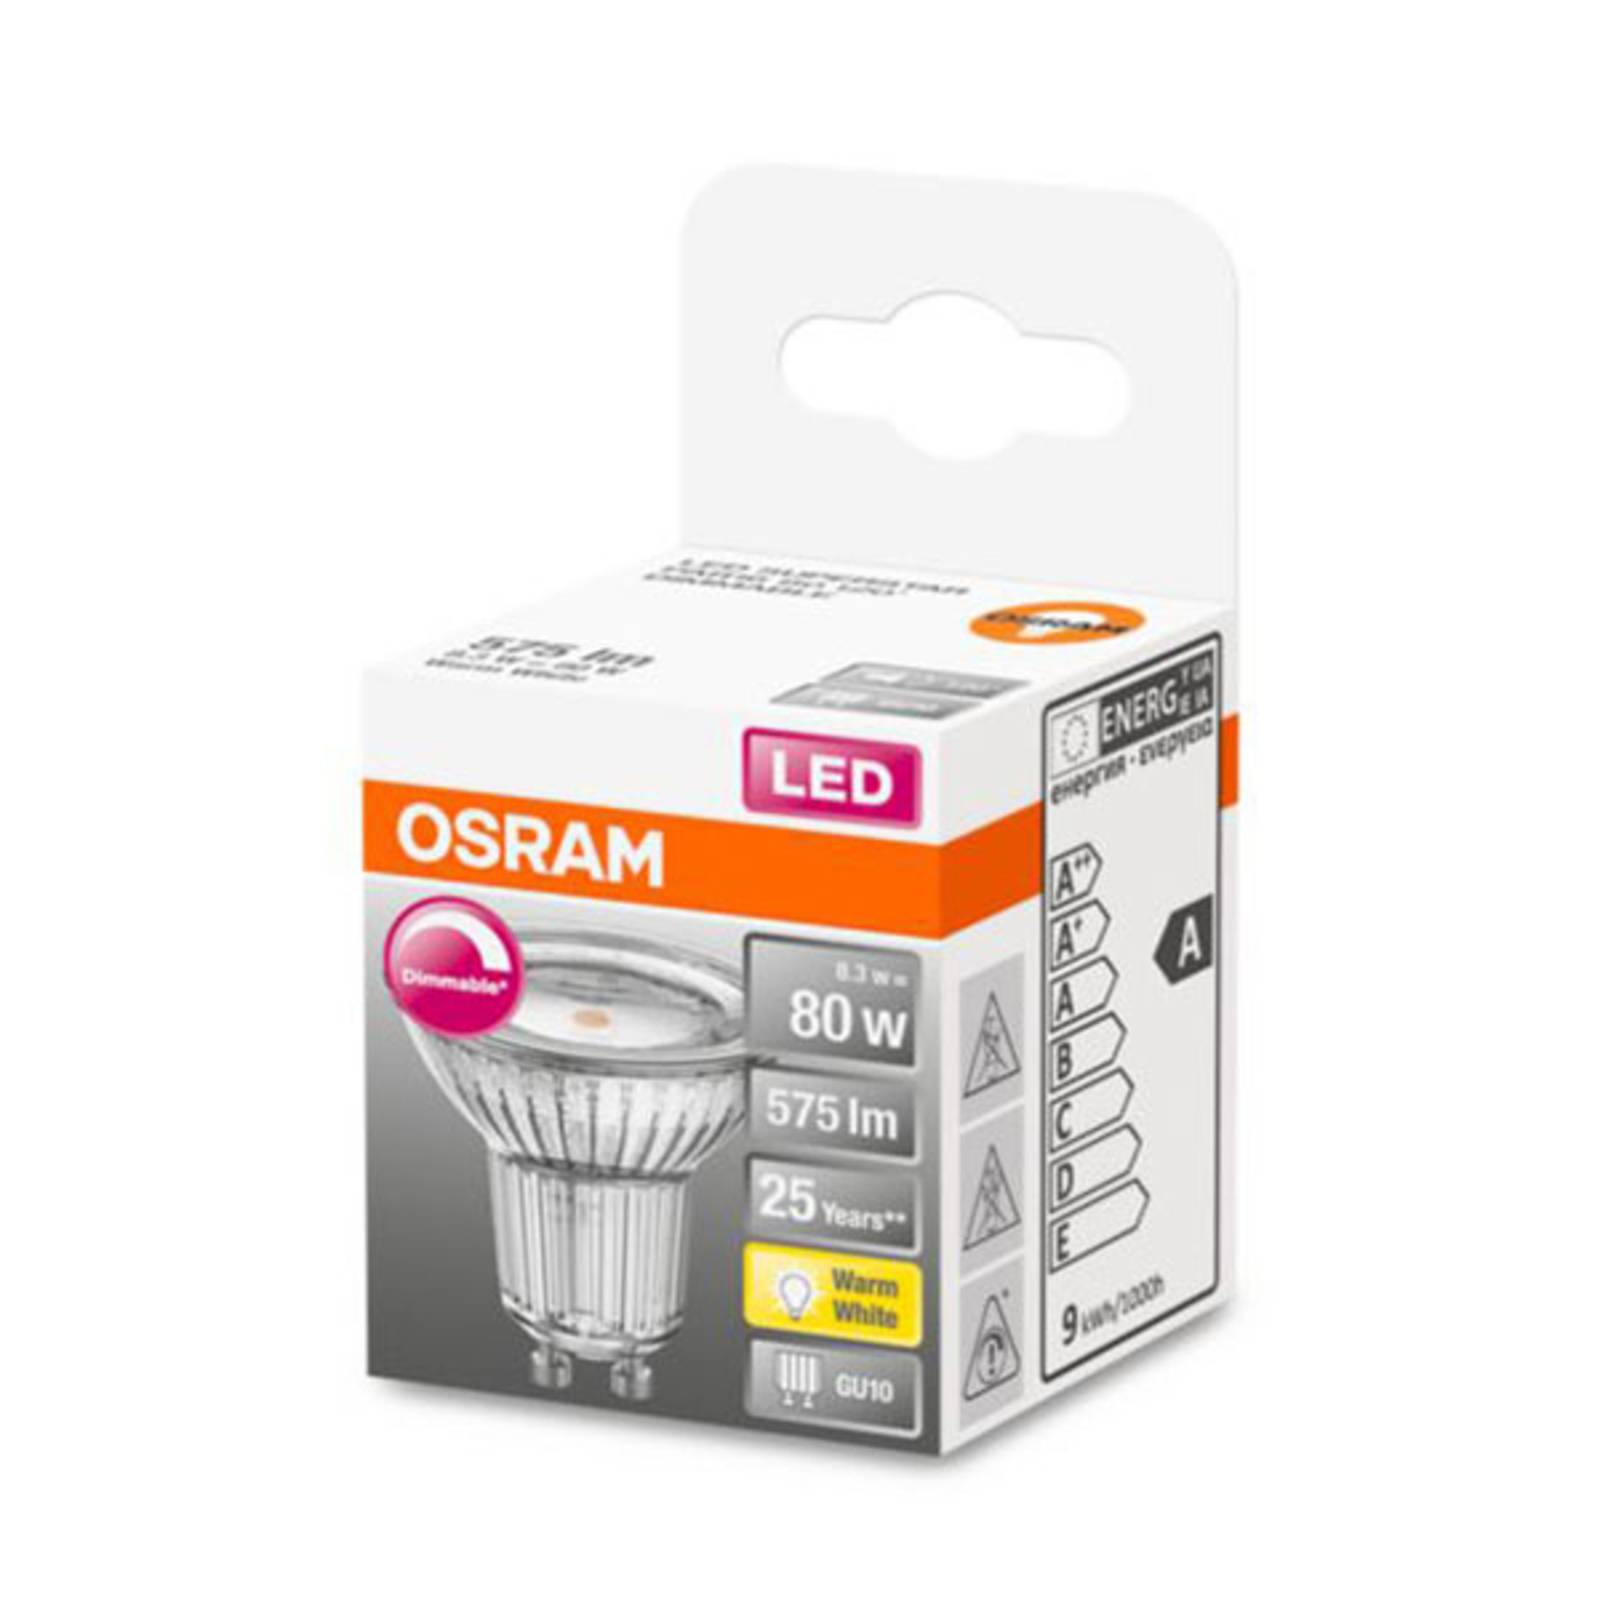 OSRAM OSRAM LED reflektor GU10 7,9W 927 120° stmívací